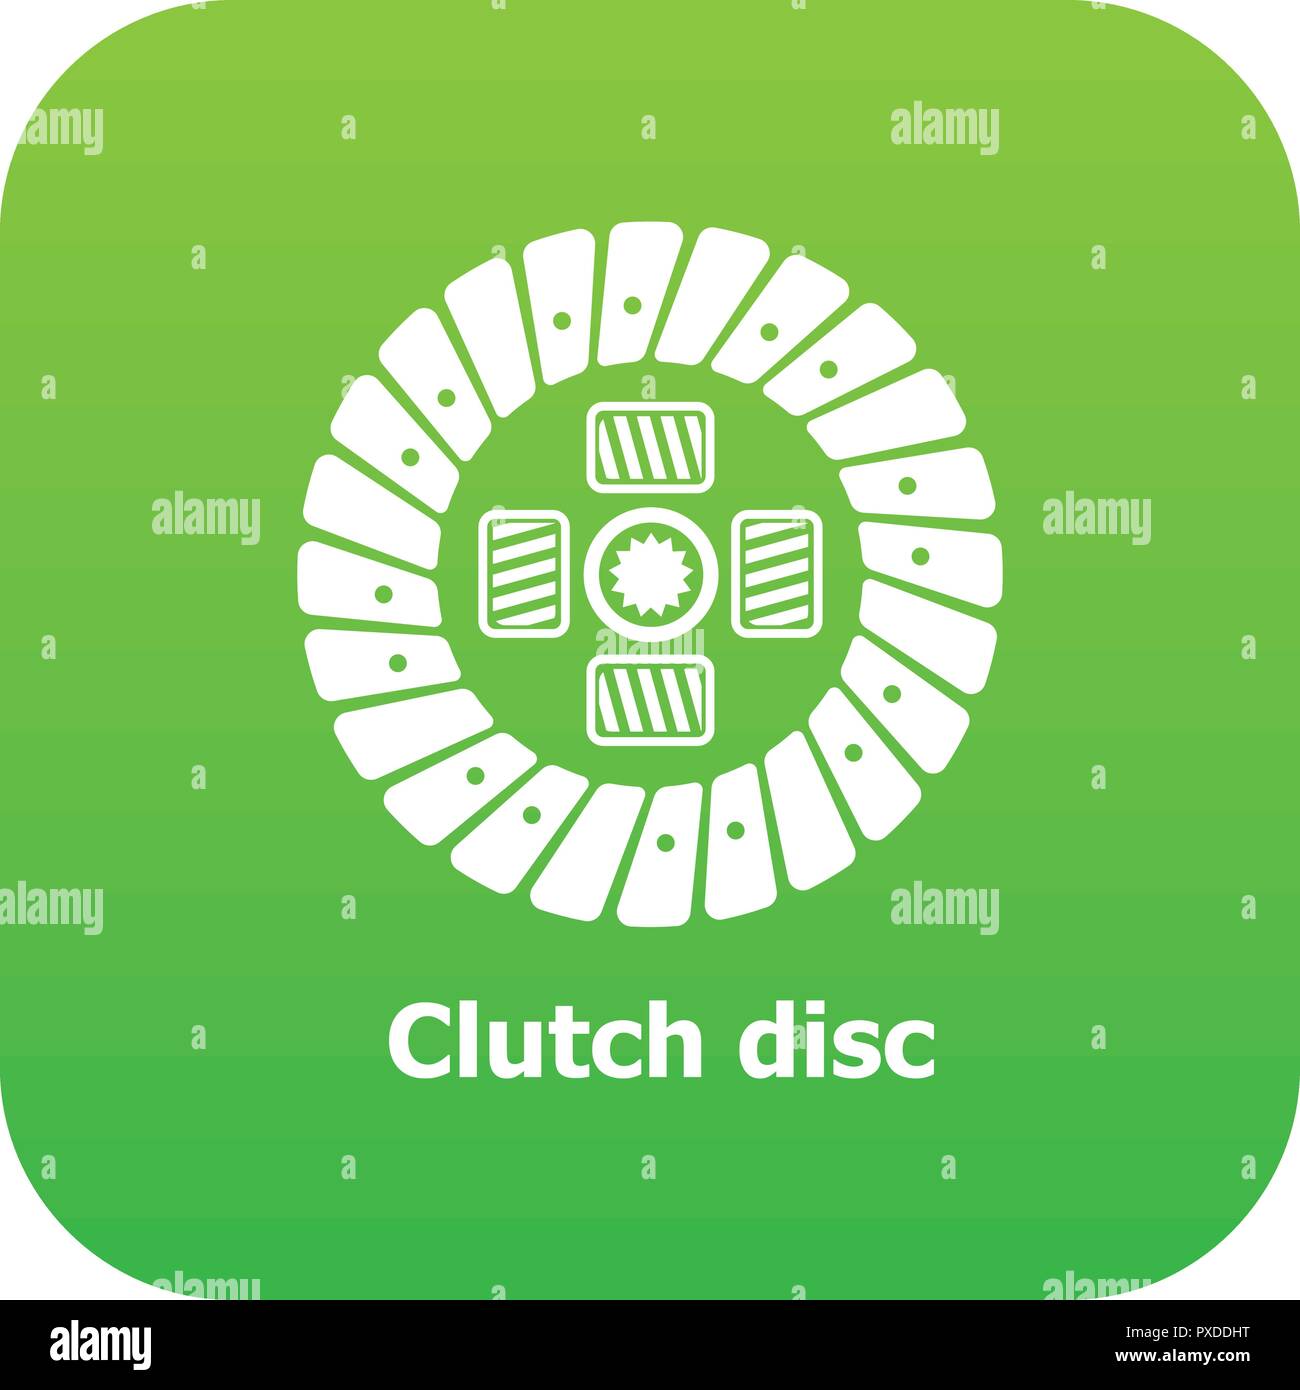 Clutch disc icon green vector Stock Vector